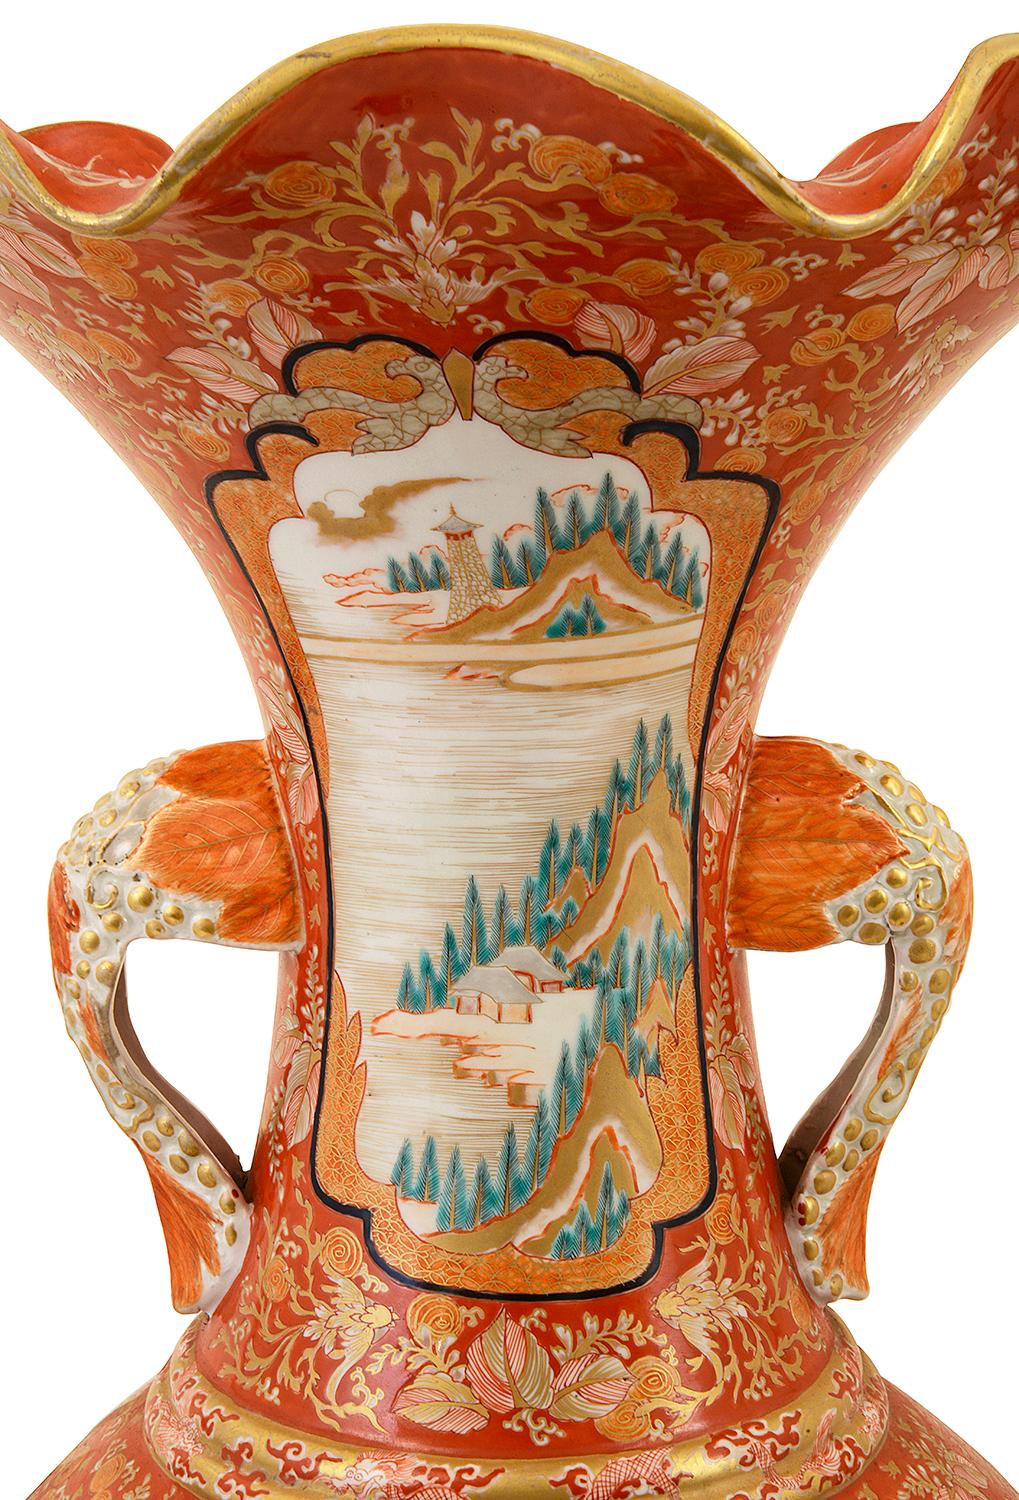 Eine wunderbar dekorative japanische Kutani-Vase, Meiji-Zeit 1868-1912. Auf dem klassischen orangefarbenen Grund mit Blätterdekor und handgemalten Tafeln, die verschiedene Gartenszenen, mythische Drachen, Berge, Vögel und Fische darstellen. Maße: